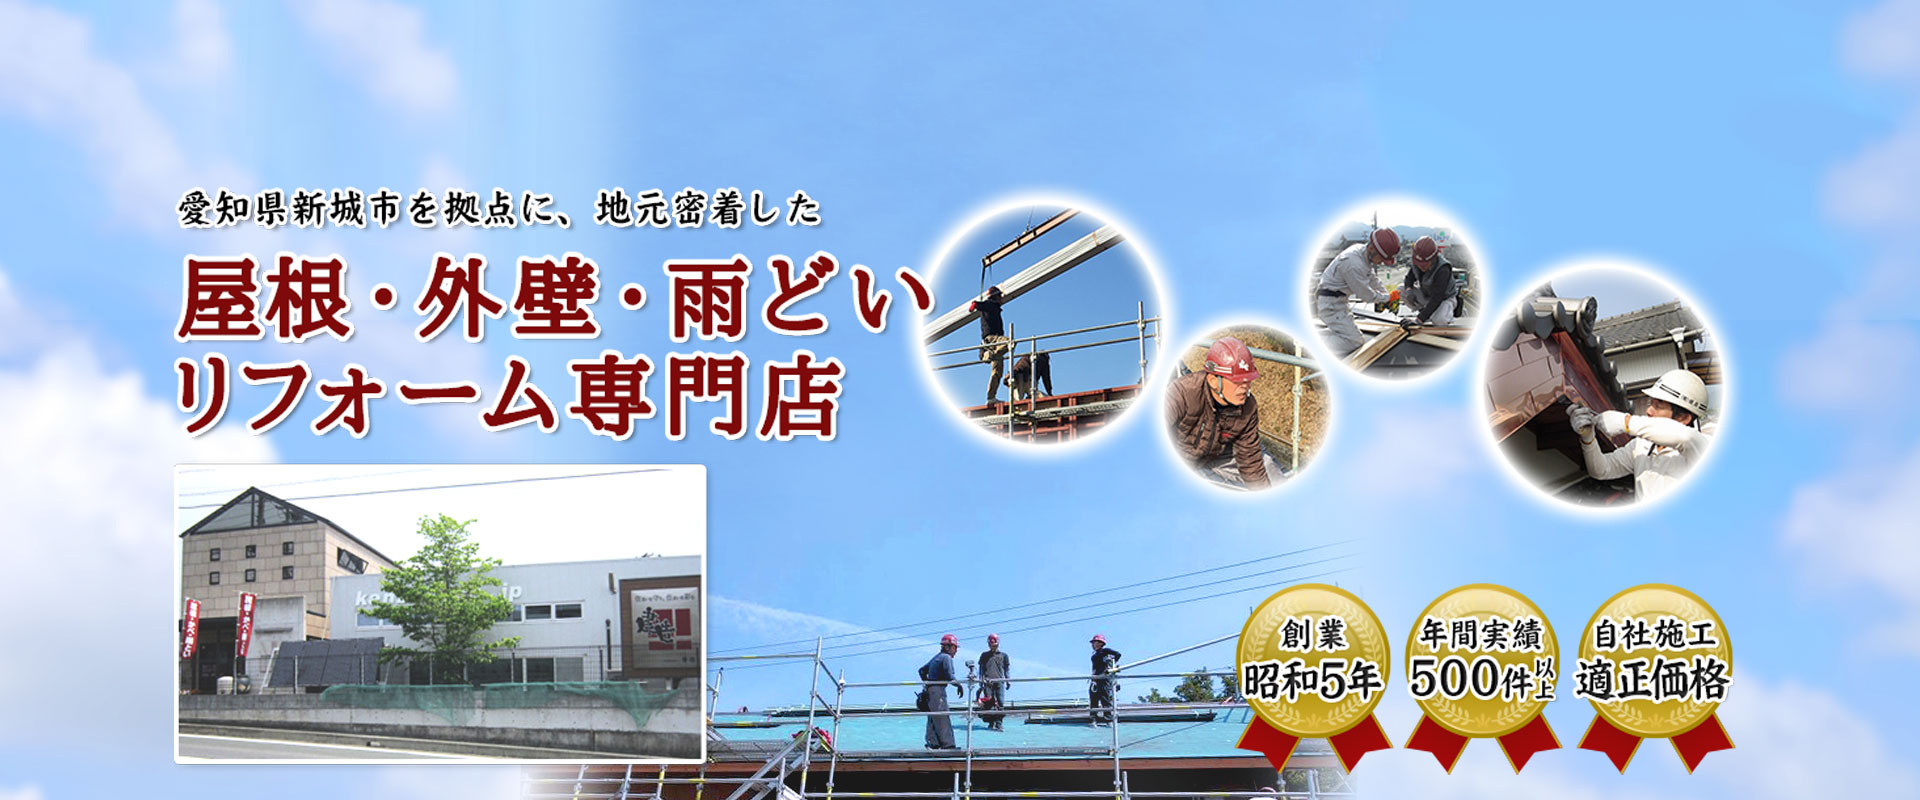 愛知県新城市を拠点に、地元密着した屋根・外壁・雨どいリフォーム専門店